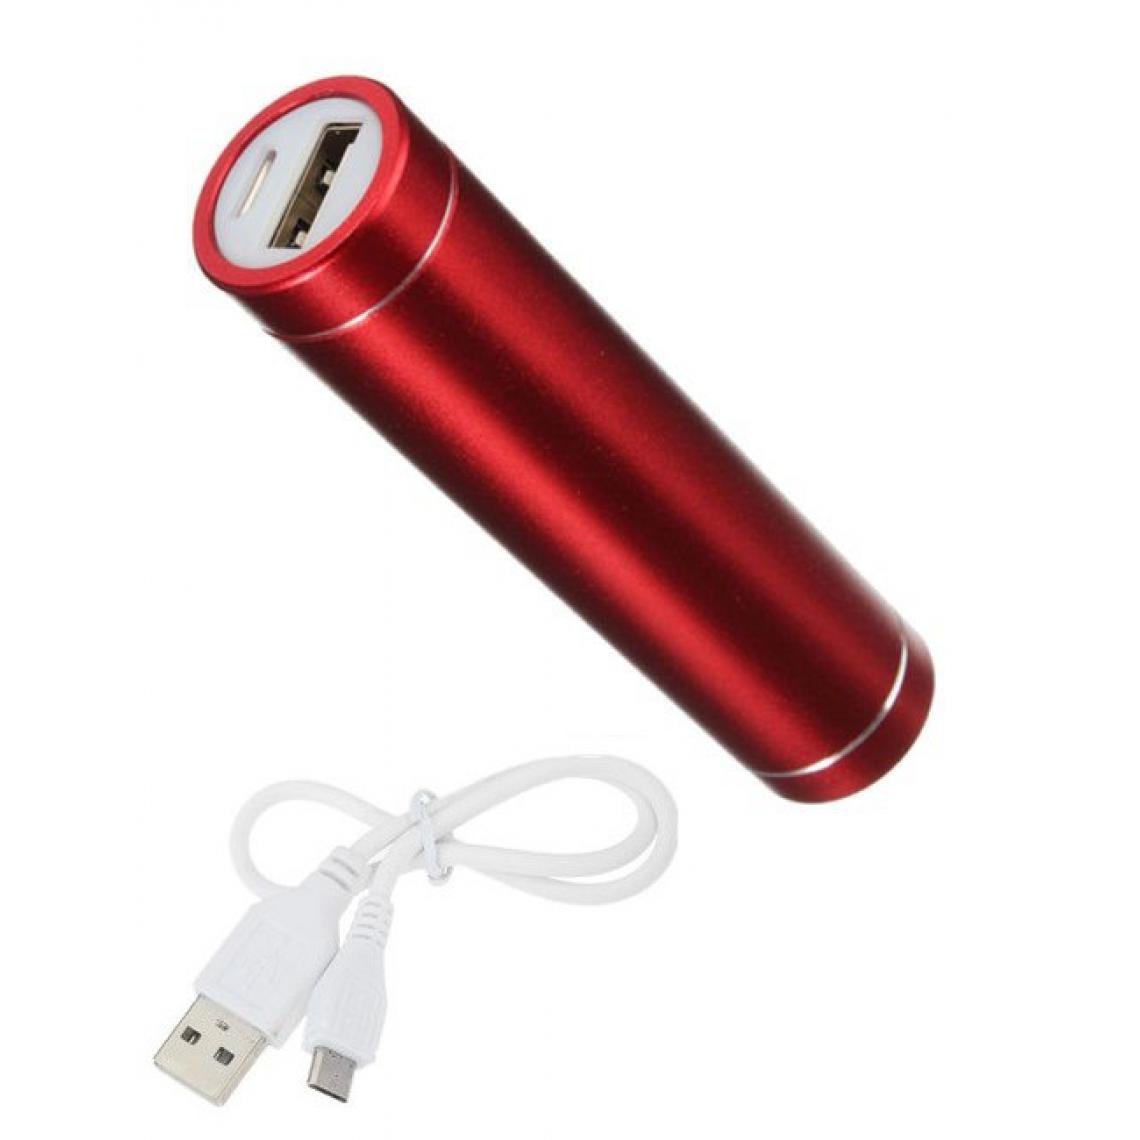 Shot - Batterie Chargeur Externe pour "XIAOMI Redmi 9C" Power Bank 2600mAh avec Cable USB/Mirco USB Secours Telephon (ROUGE) - Chargeur secteur téléphone